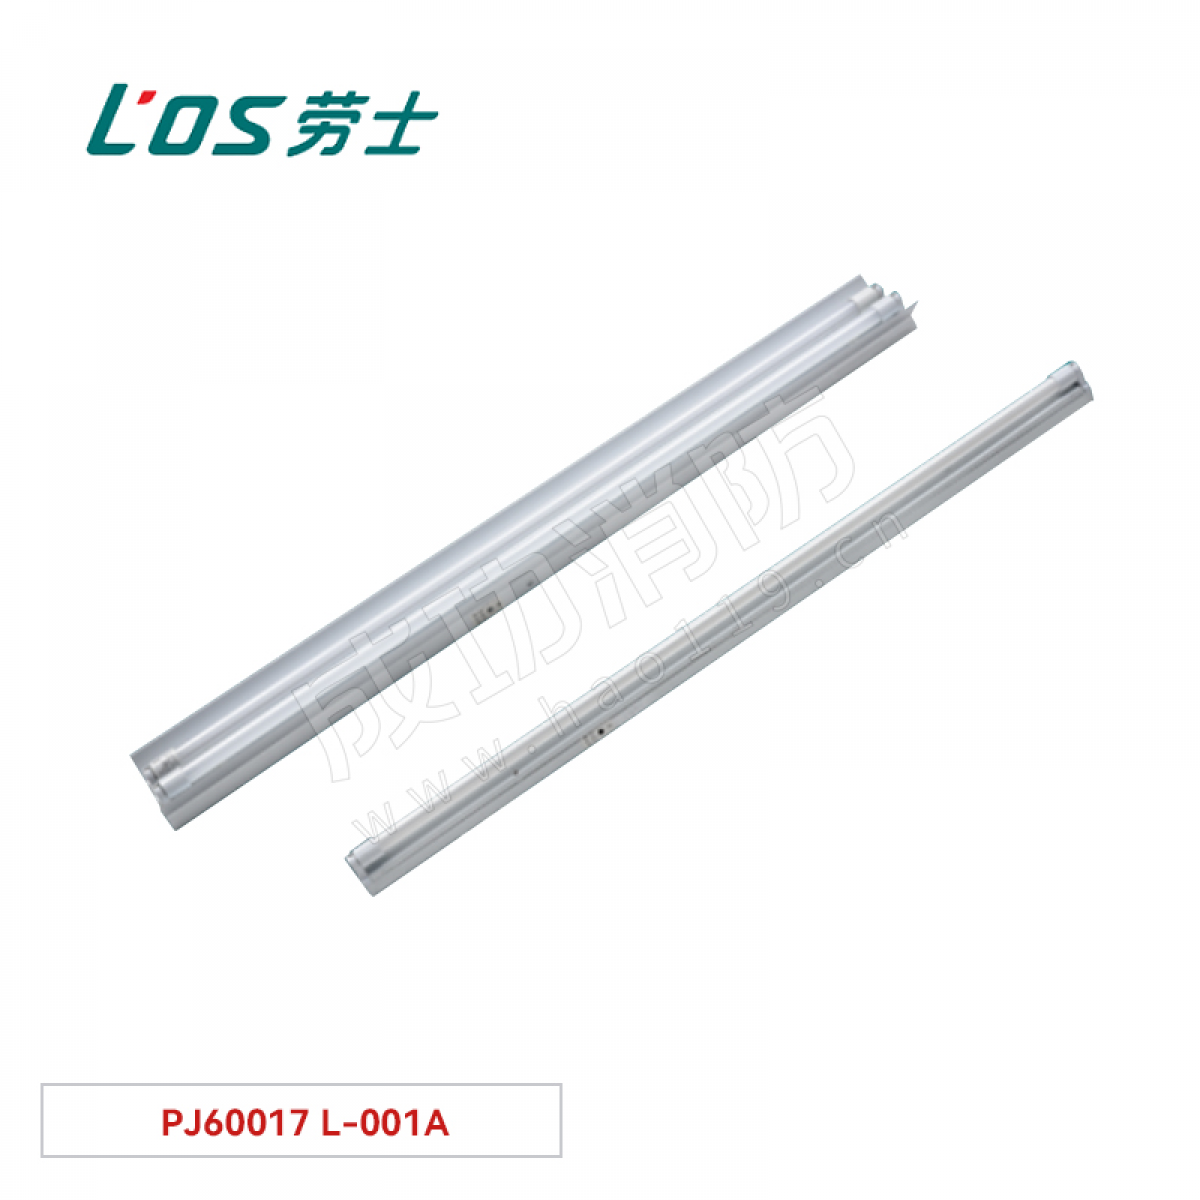 劳士 单管荧光灯(吊装式/墙装式) PJ60017 L-001A